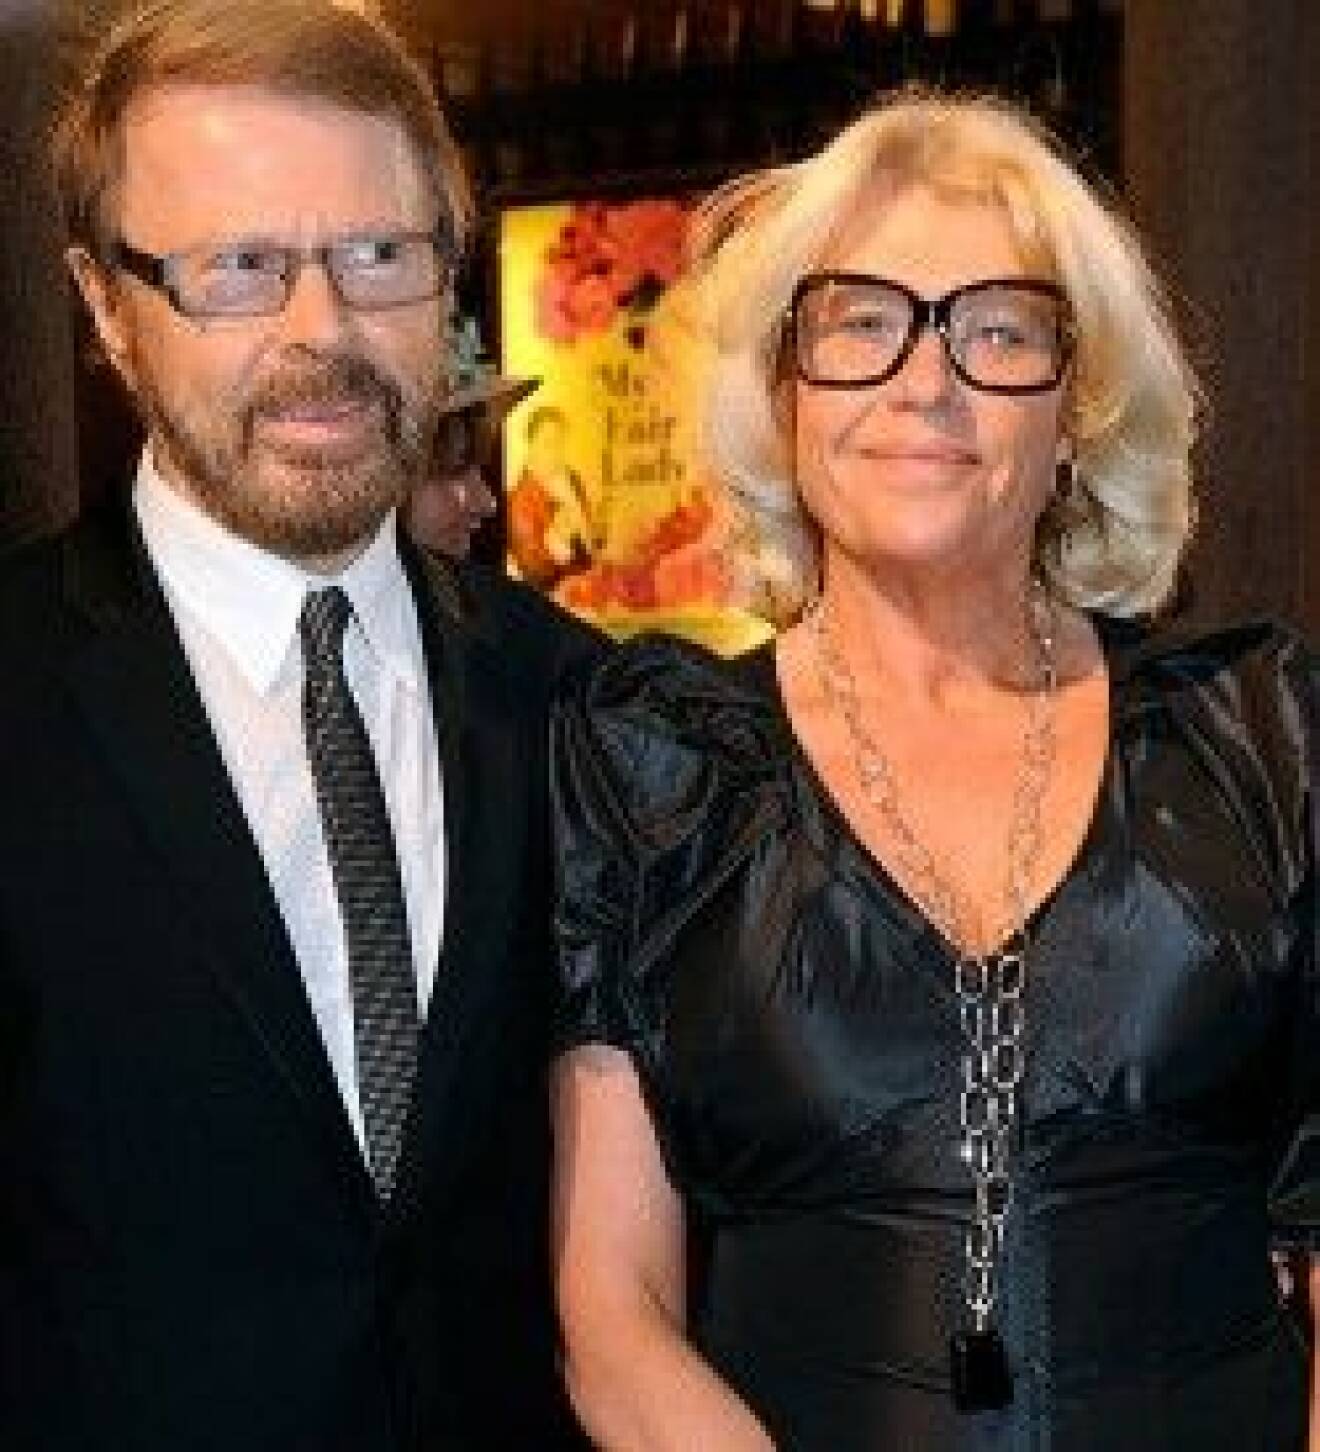 Björn och Lena Ulvaeus hade en mycket trevlig kväll.